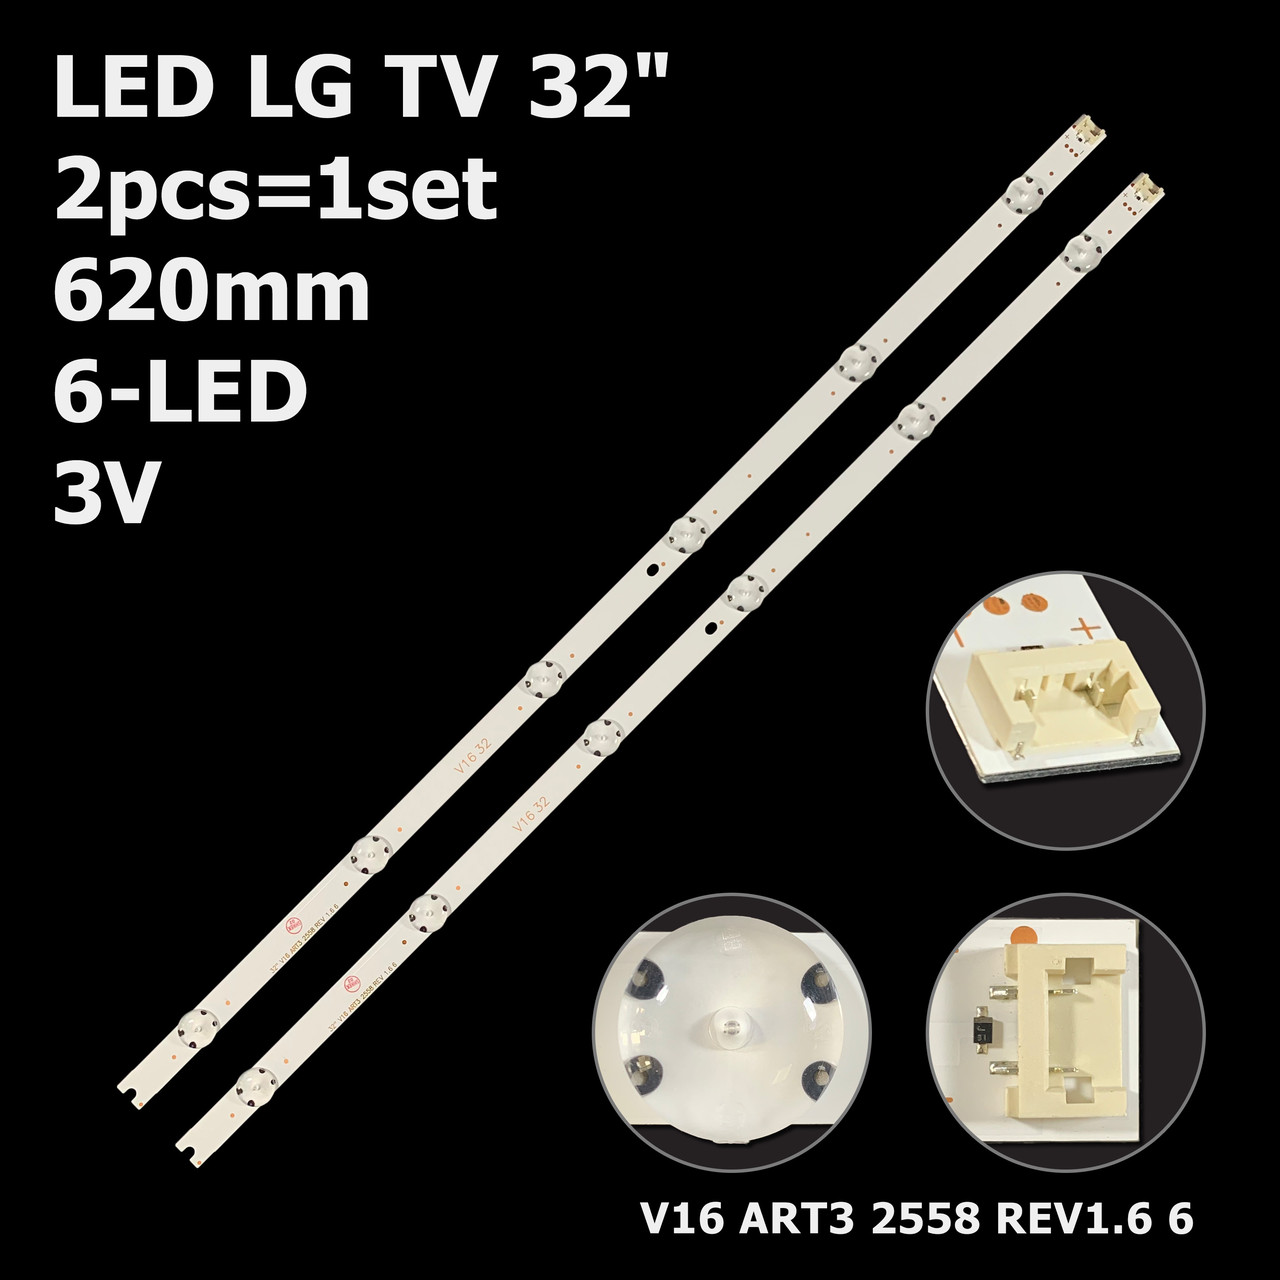 LED підсвітка LG TV 32" V16 ART3 2558 REV1.6 6 6916L-2558A AGF79046601 32LW340C-ZA 2шт., фото 1